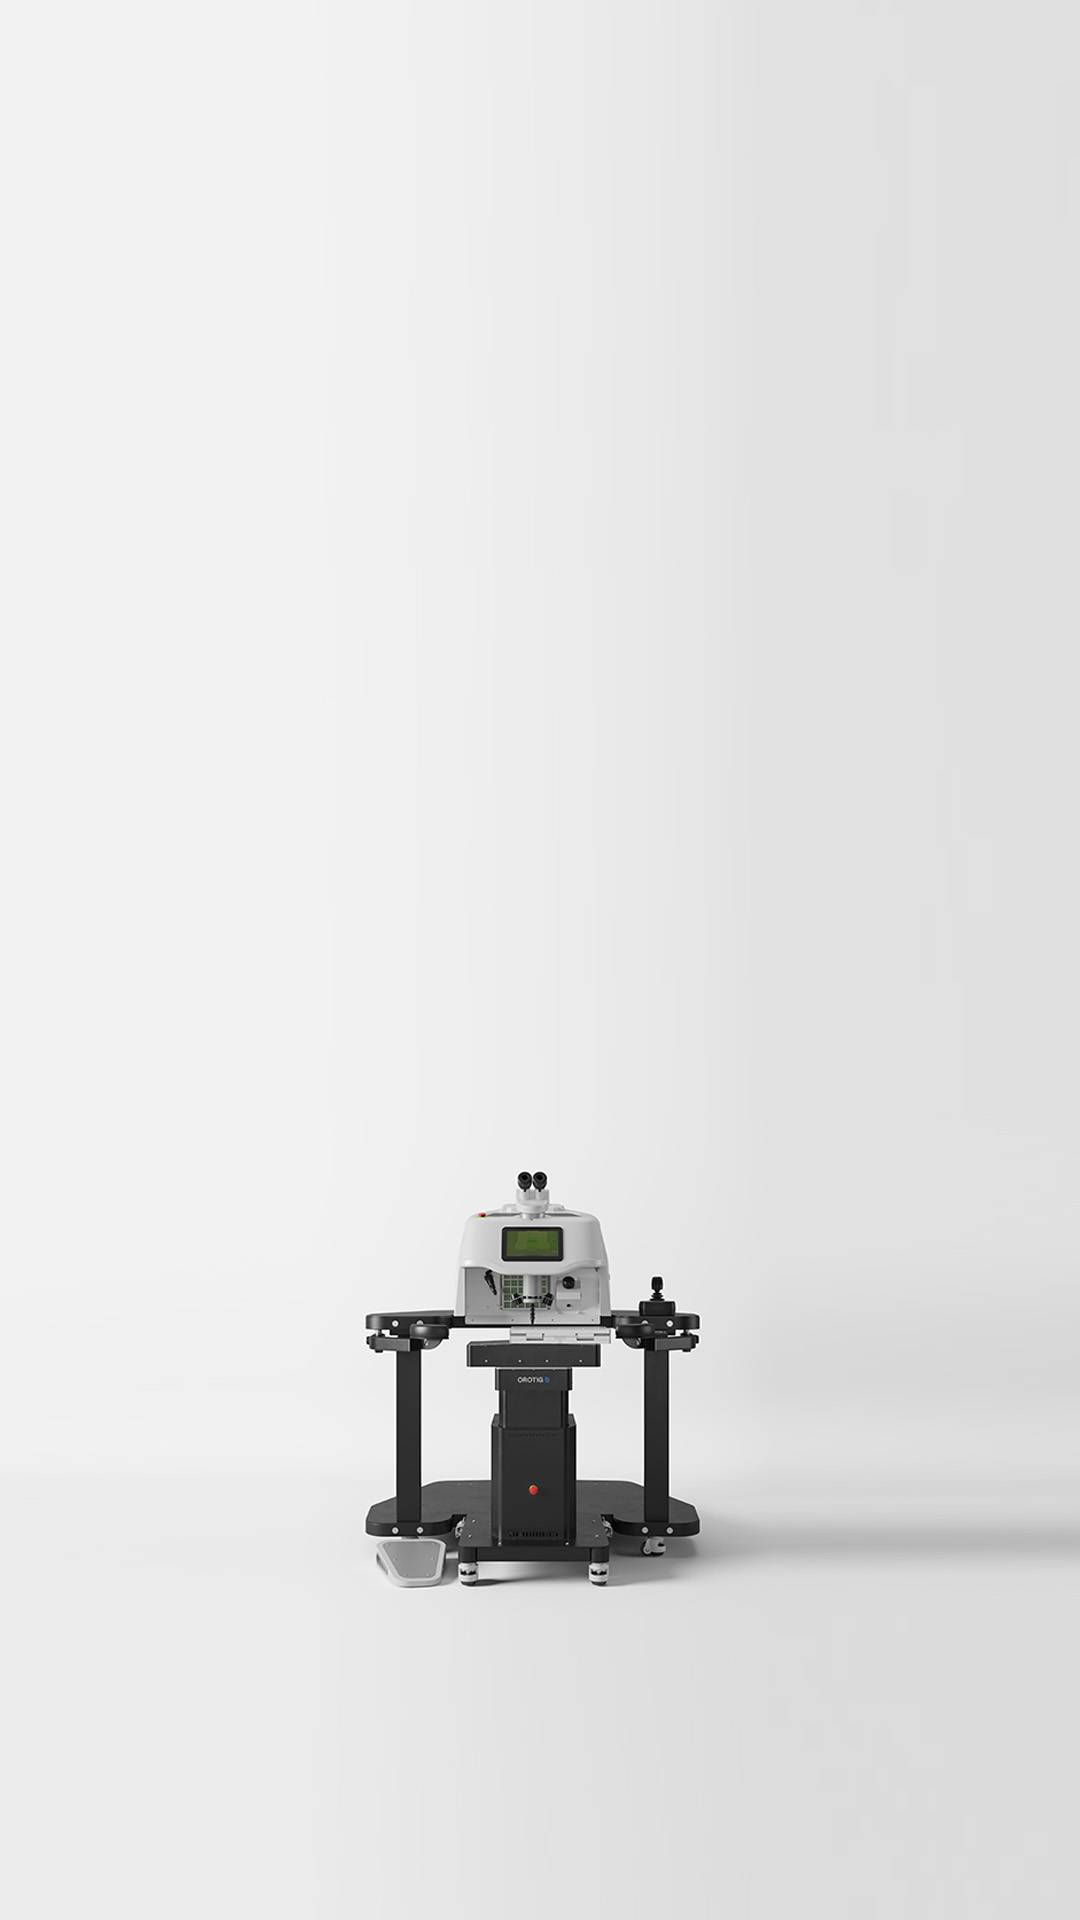 Die Laserschweißmaschine Aries von Orotig bietet hohe Leistung und beste Qualität bei großen Werkstücken, auch im Dauerbetrieb.